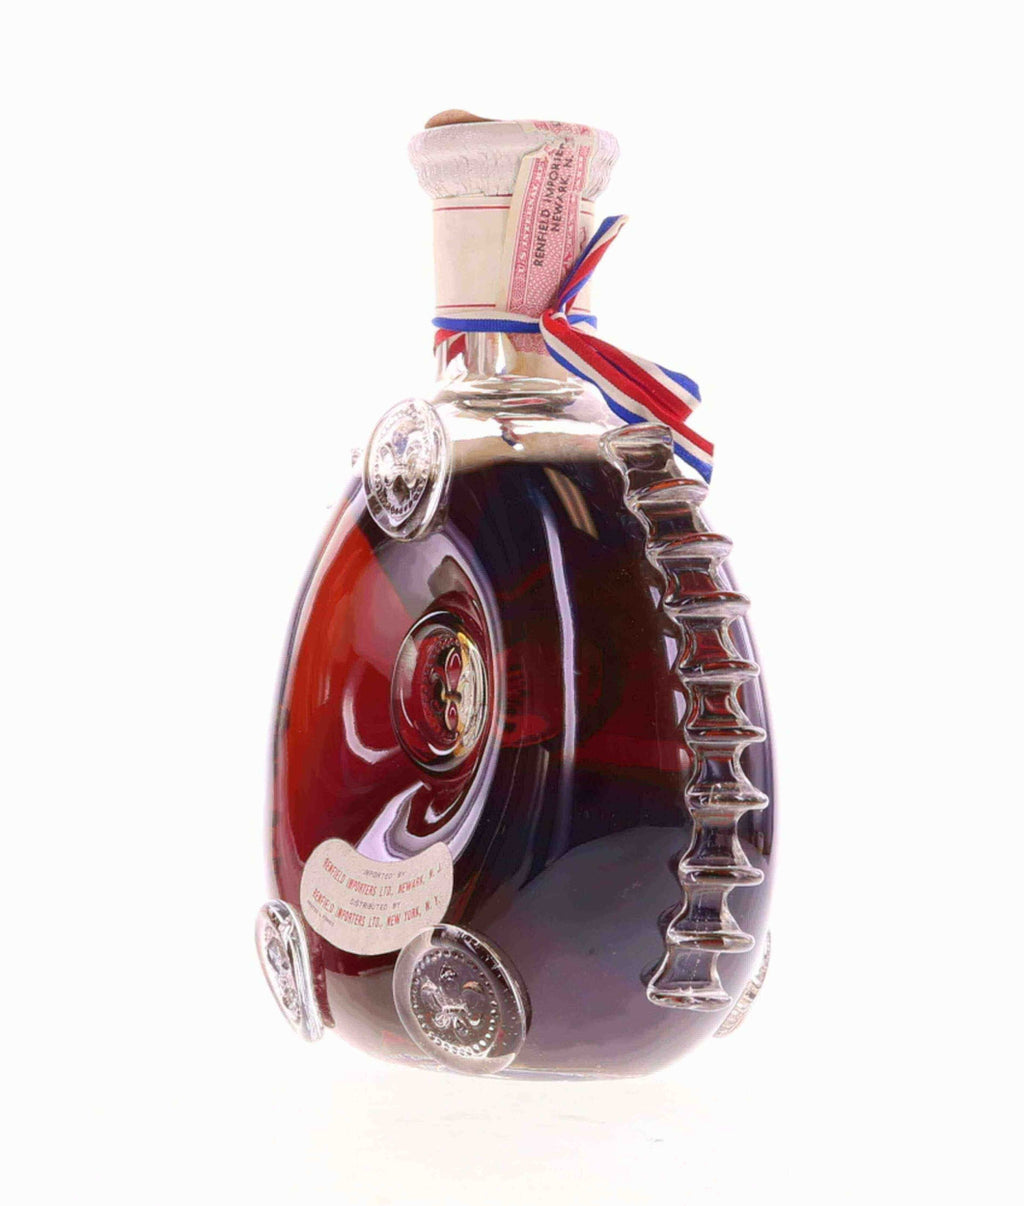 Rémy Martin Louis XIII Cognac 50ml – ALD Shop